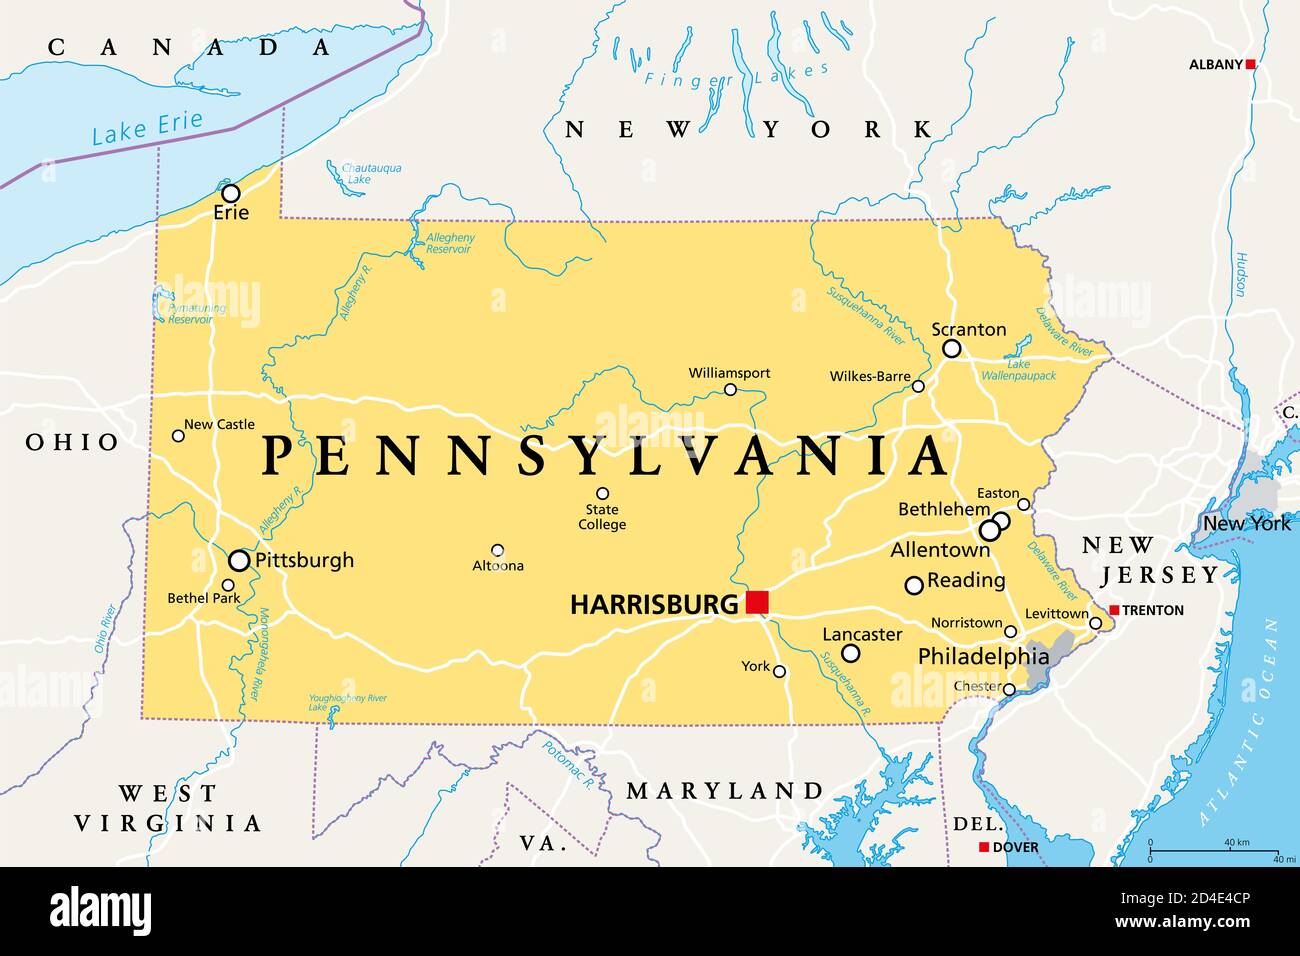 Pennsylvania, PA, politische Karte. Offiziell das Commonwealth von Pennsylvania. Staat im Nordosten der Vereinigten Staaten von Amerika. Hauptstadt Harrisburg. Stockfoto